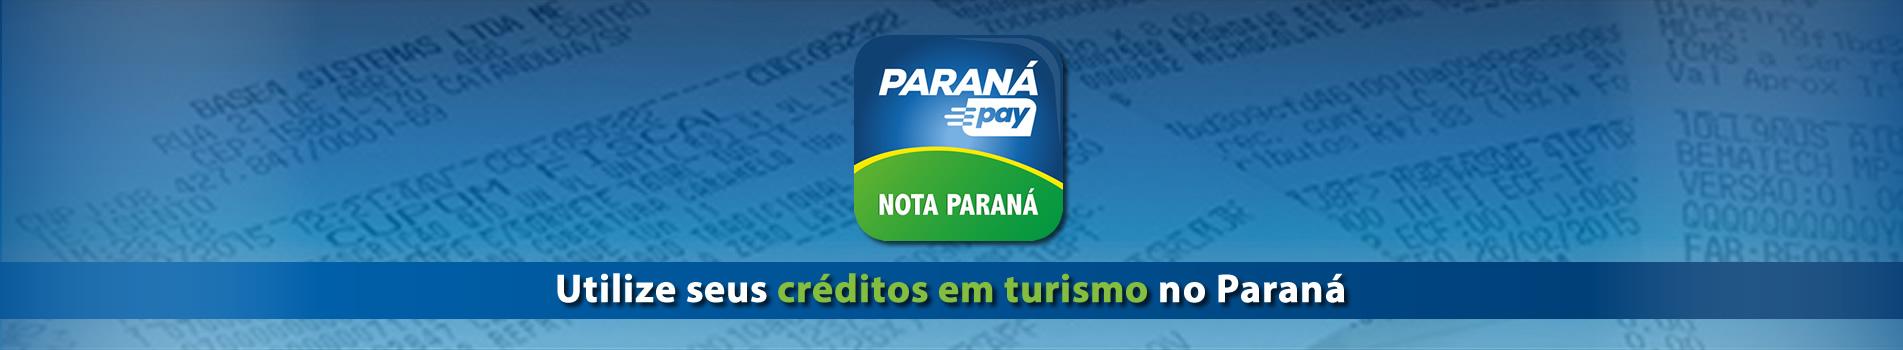 Como utilizar seus créditos para o turismo no Paraná